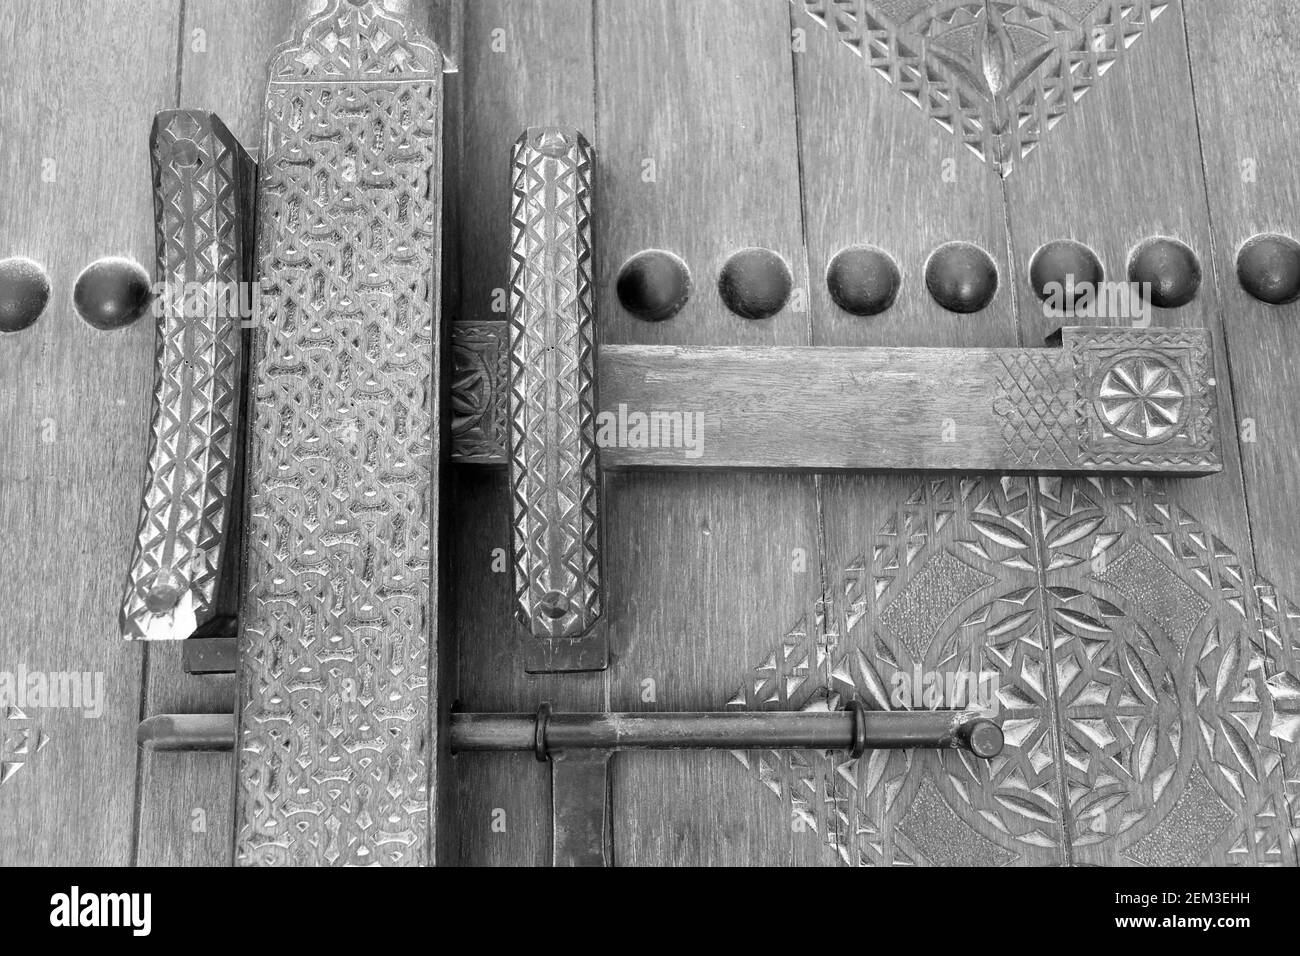 Monochrom, schwarz-weiß, Bild einer traditionellen alten Tür auf einem alten Haus. königreich Bahrain Stockfoto